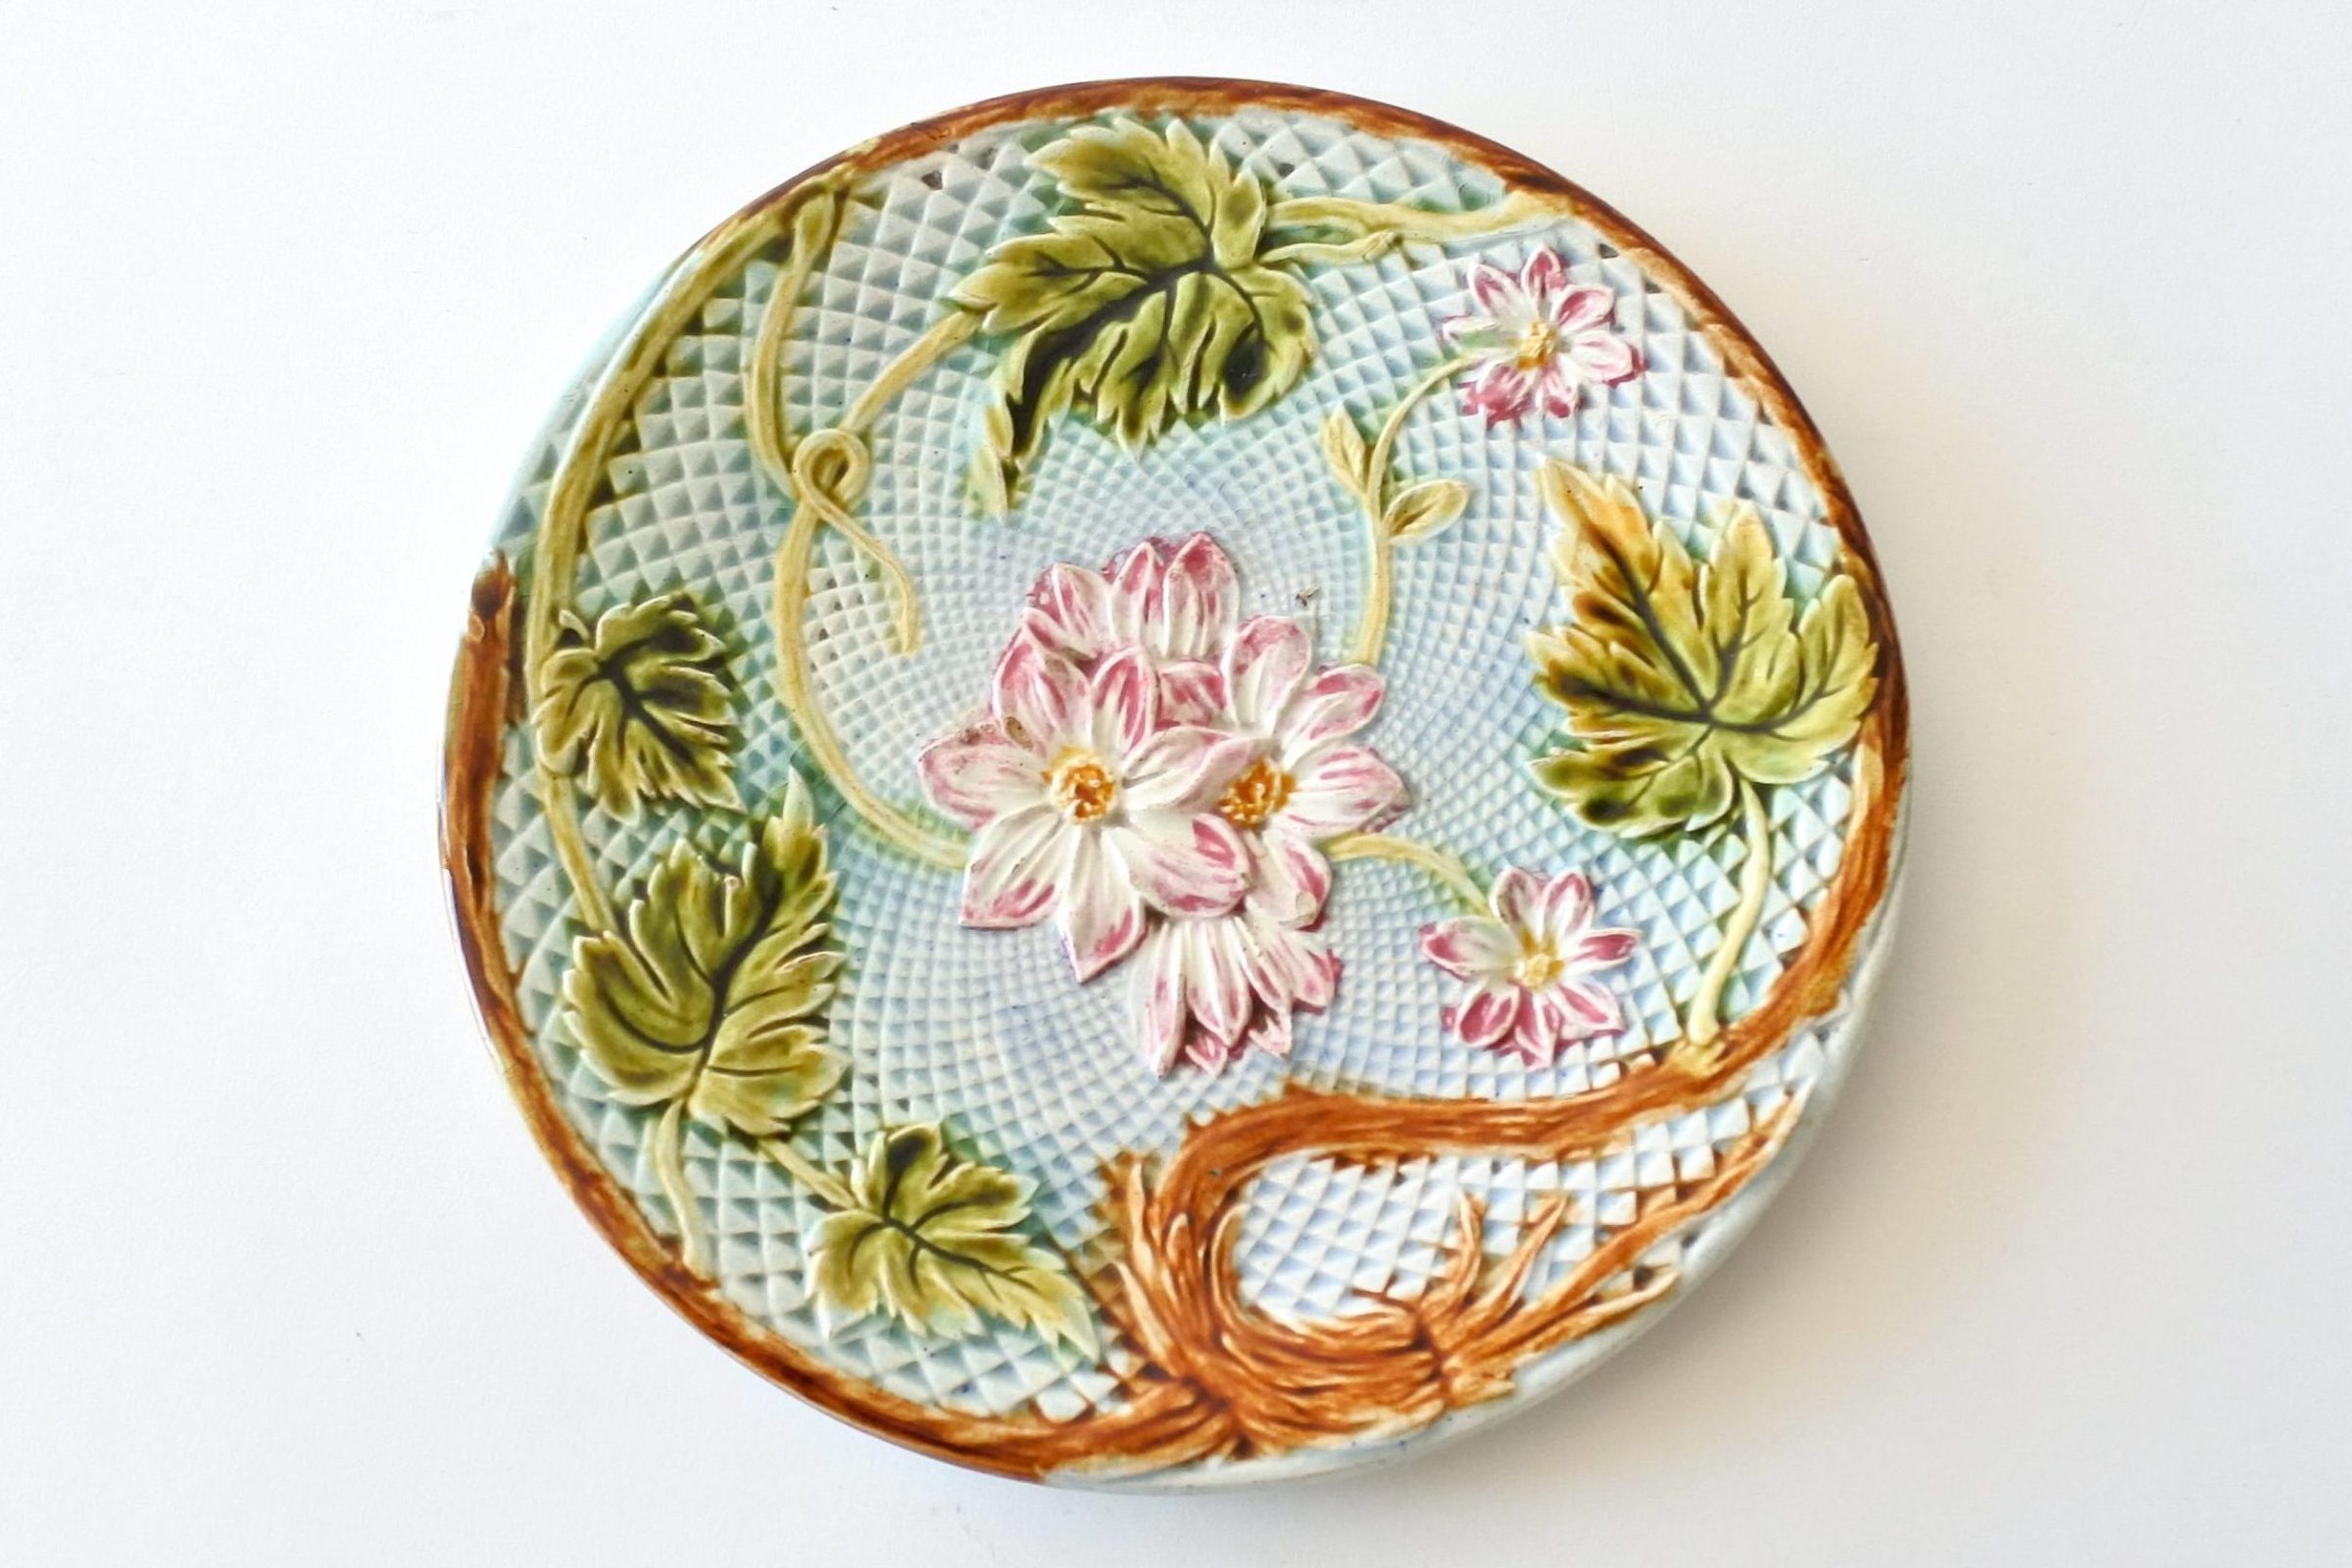 Piatto in ceramica barbotine decorato con rami foglie e fiori rosa